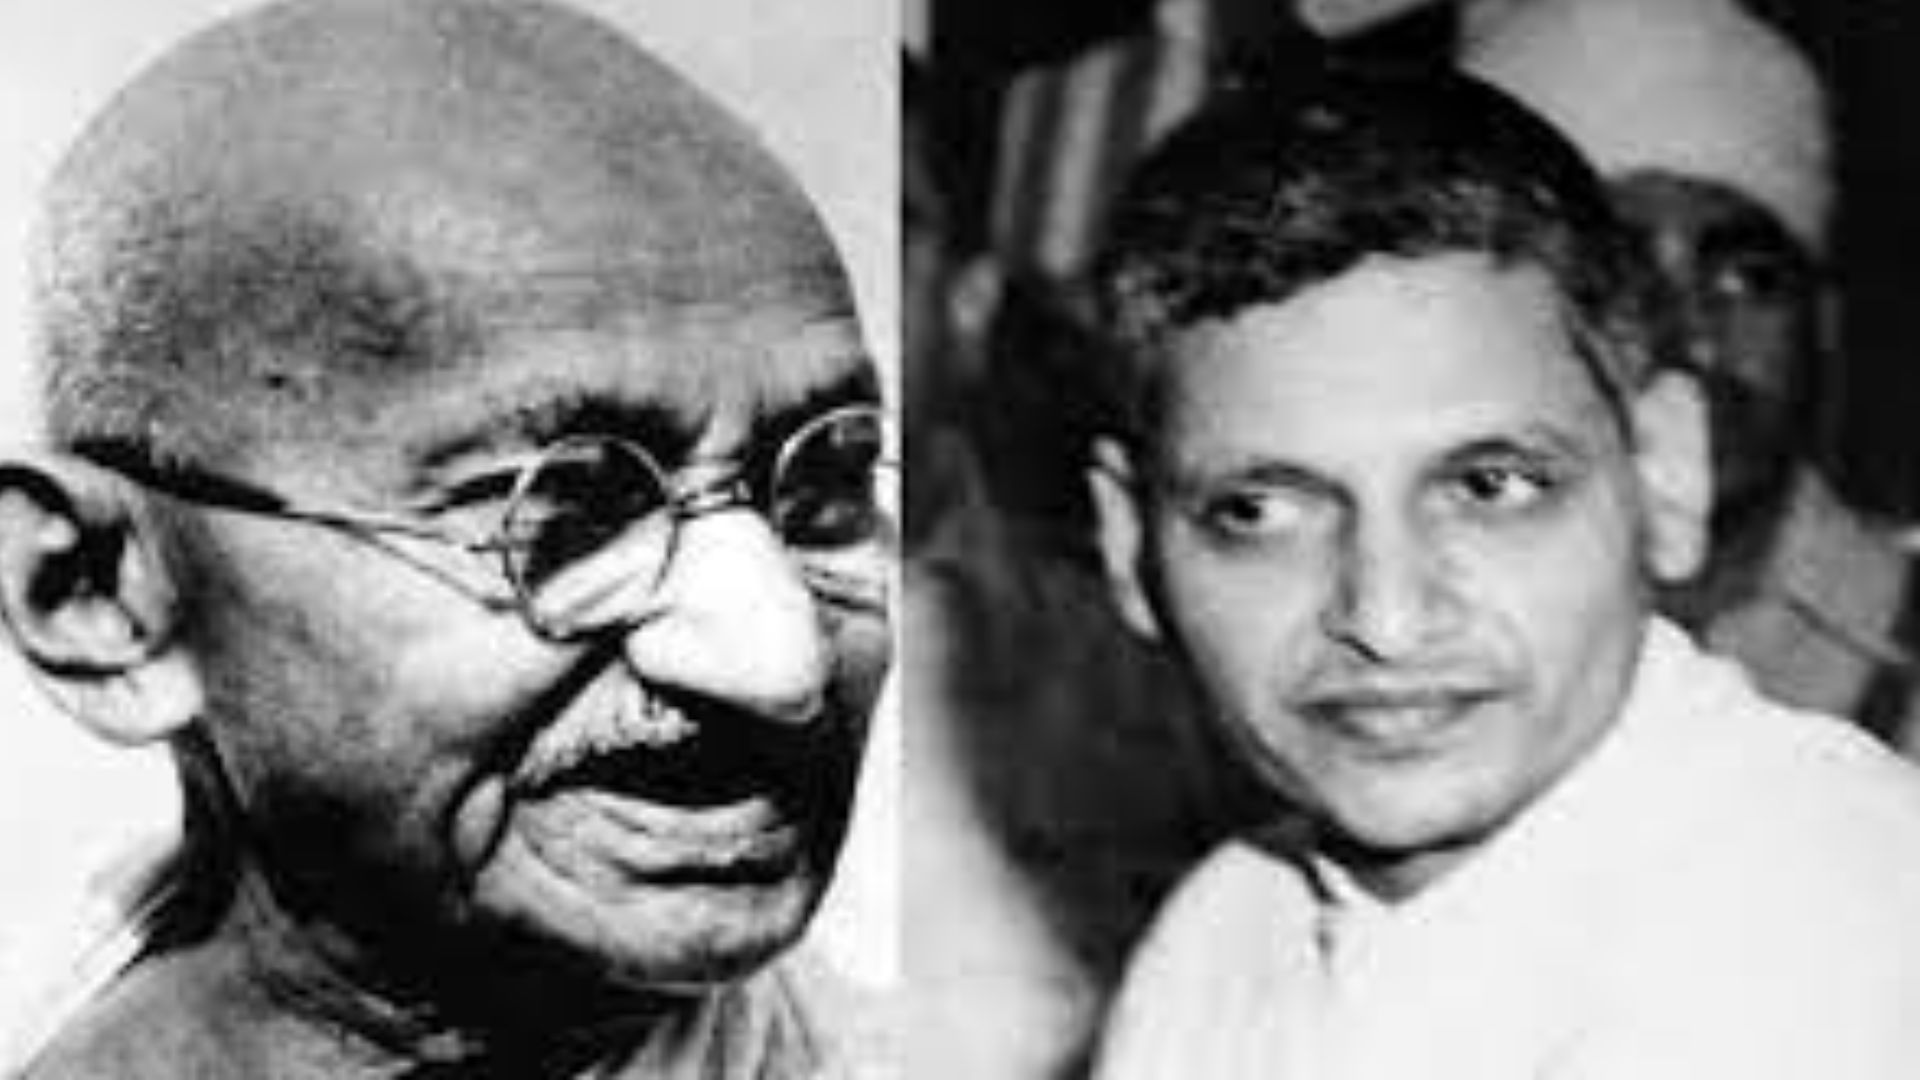 15 नवंबर का इतिहास: आज ही के दिन महात्मा गांधी की जान लेने वाले को दी गई थी फांसी 